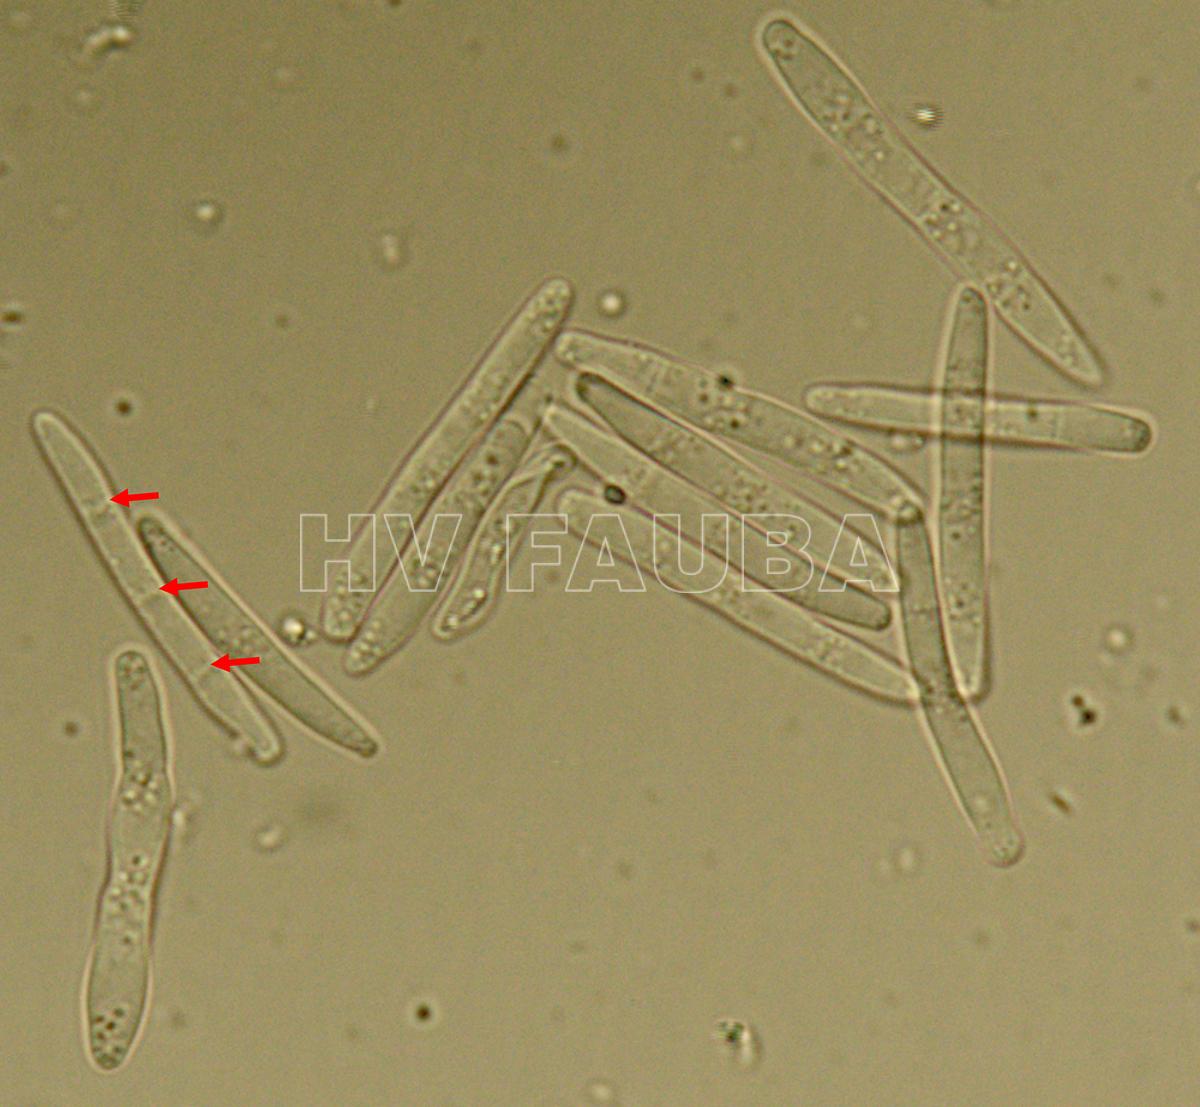 Conidios de Parastagonospora nodorum. Las flechas blancas indican tres tabiques de un conidio a 1000 ×. Autor:: U. Adhikari, publicado en Mehra et al., 2009.